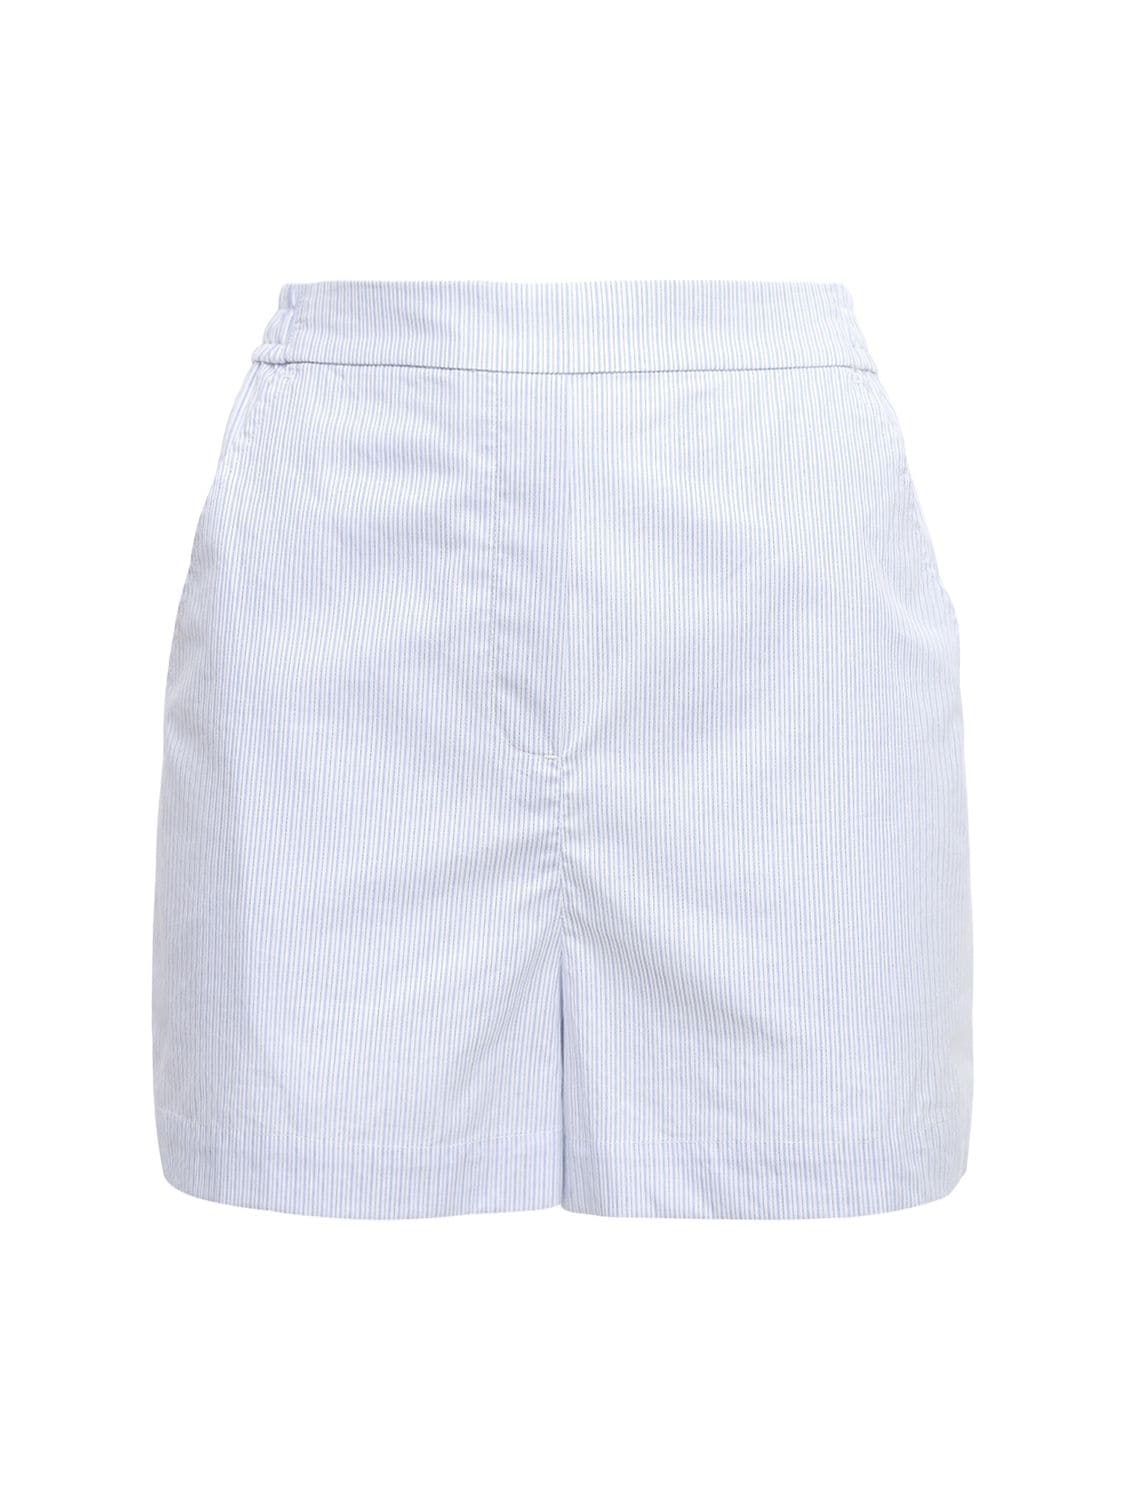 Umbria Organic Cotton Shorts